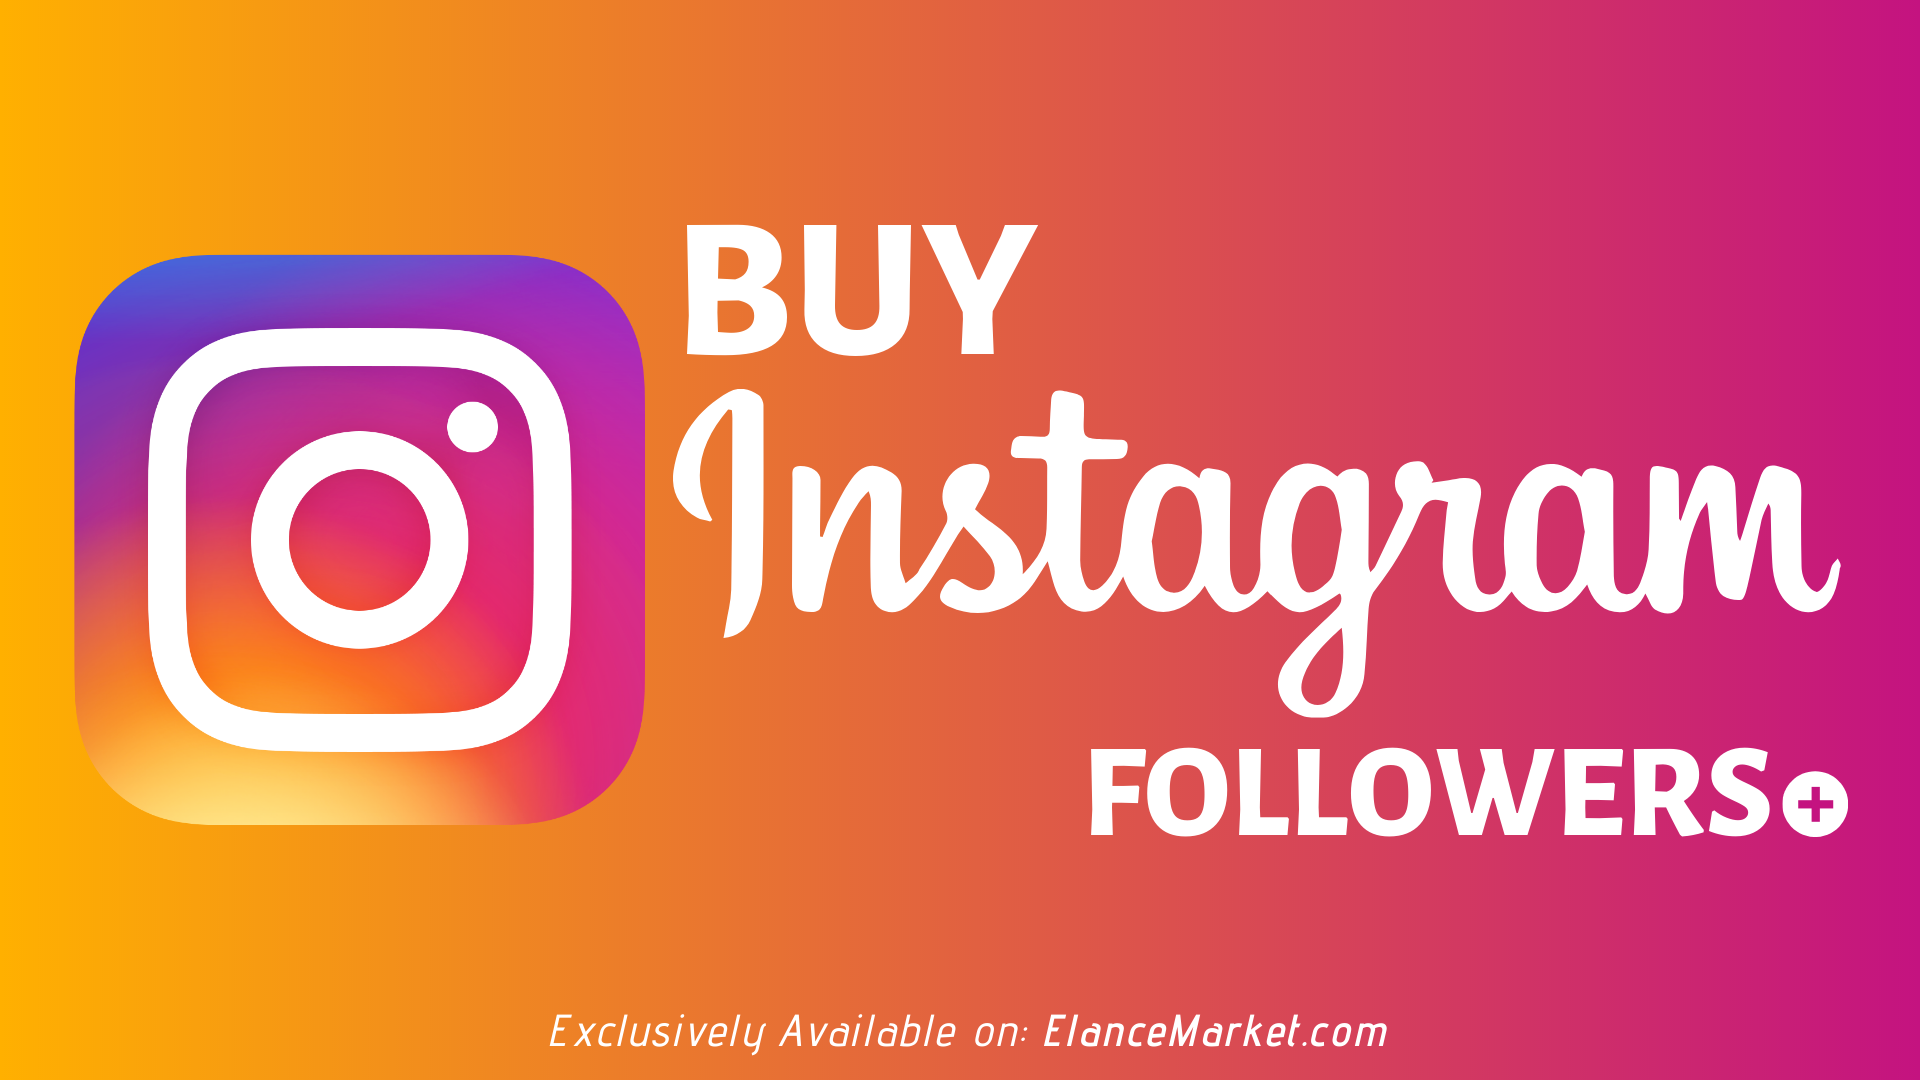 Buy 1000 Instagram Followers · Cheap · Refill Guarantee Social Media